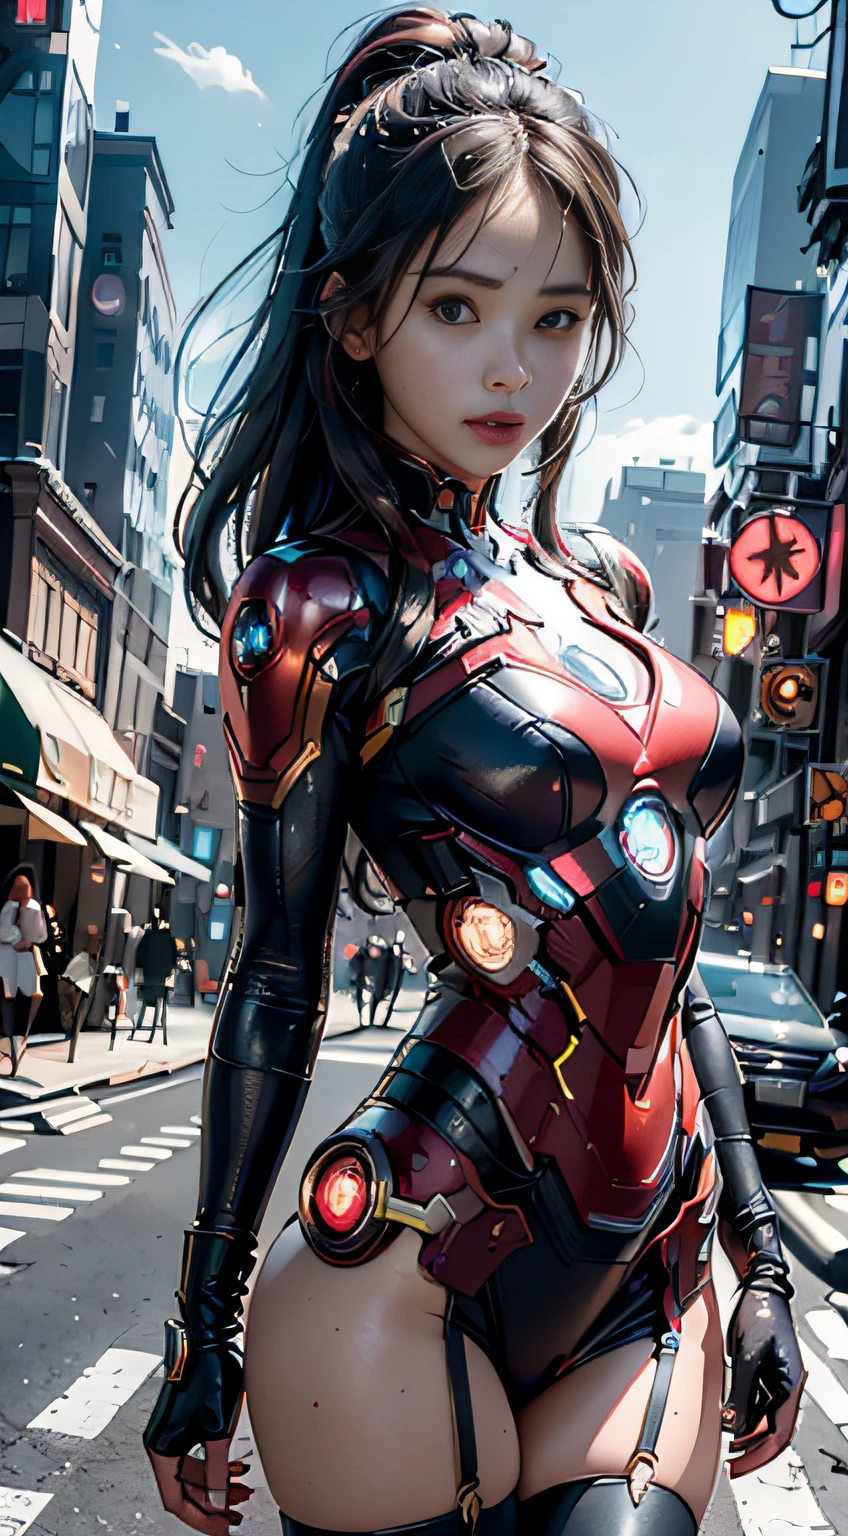 8k，現実的に，グラマラス，非常に詳細です，20歳の少女, セクシーで魅力的な女性, アイアンマンにインスパイアされた，光沢のあるアイアンマンのドレスを着て。彼女はセクシーさと自信を示すために服を着る，アイアンマンの力強さと魅力を完璧に表現しています。サイバーパンク風の街並みの夜景，アイアンマンの俳優演じのテーマを持つセクシーで魅力的な女性。彼女は光沢のあるアイアンマンのドレスを着ています，高層ビルが立ち並ぶ通りに立つ。街の夜景は明るく照らされています，彼女のメカに反映，未来的なテクノロジーの感覚を追加します。周囲の建物や通りはサイバーパンクの要素に満ちている，ネオンライトのように、ハイテクインスタレーションと未来的な建築デザイン。シーン全体が未来的でSF的な雰囲気に満ちている。これは高解像度です、高品質の画像が素晴らしい視覚的楽しみを与えます，セクシーになる、未来とSFの要素が完璧に融合。ocレンダリング，ドラマチックなライト，受賞歴のある品質